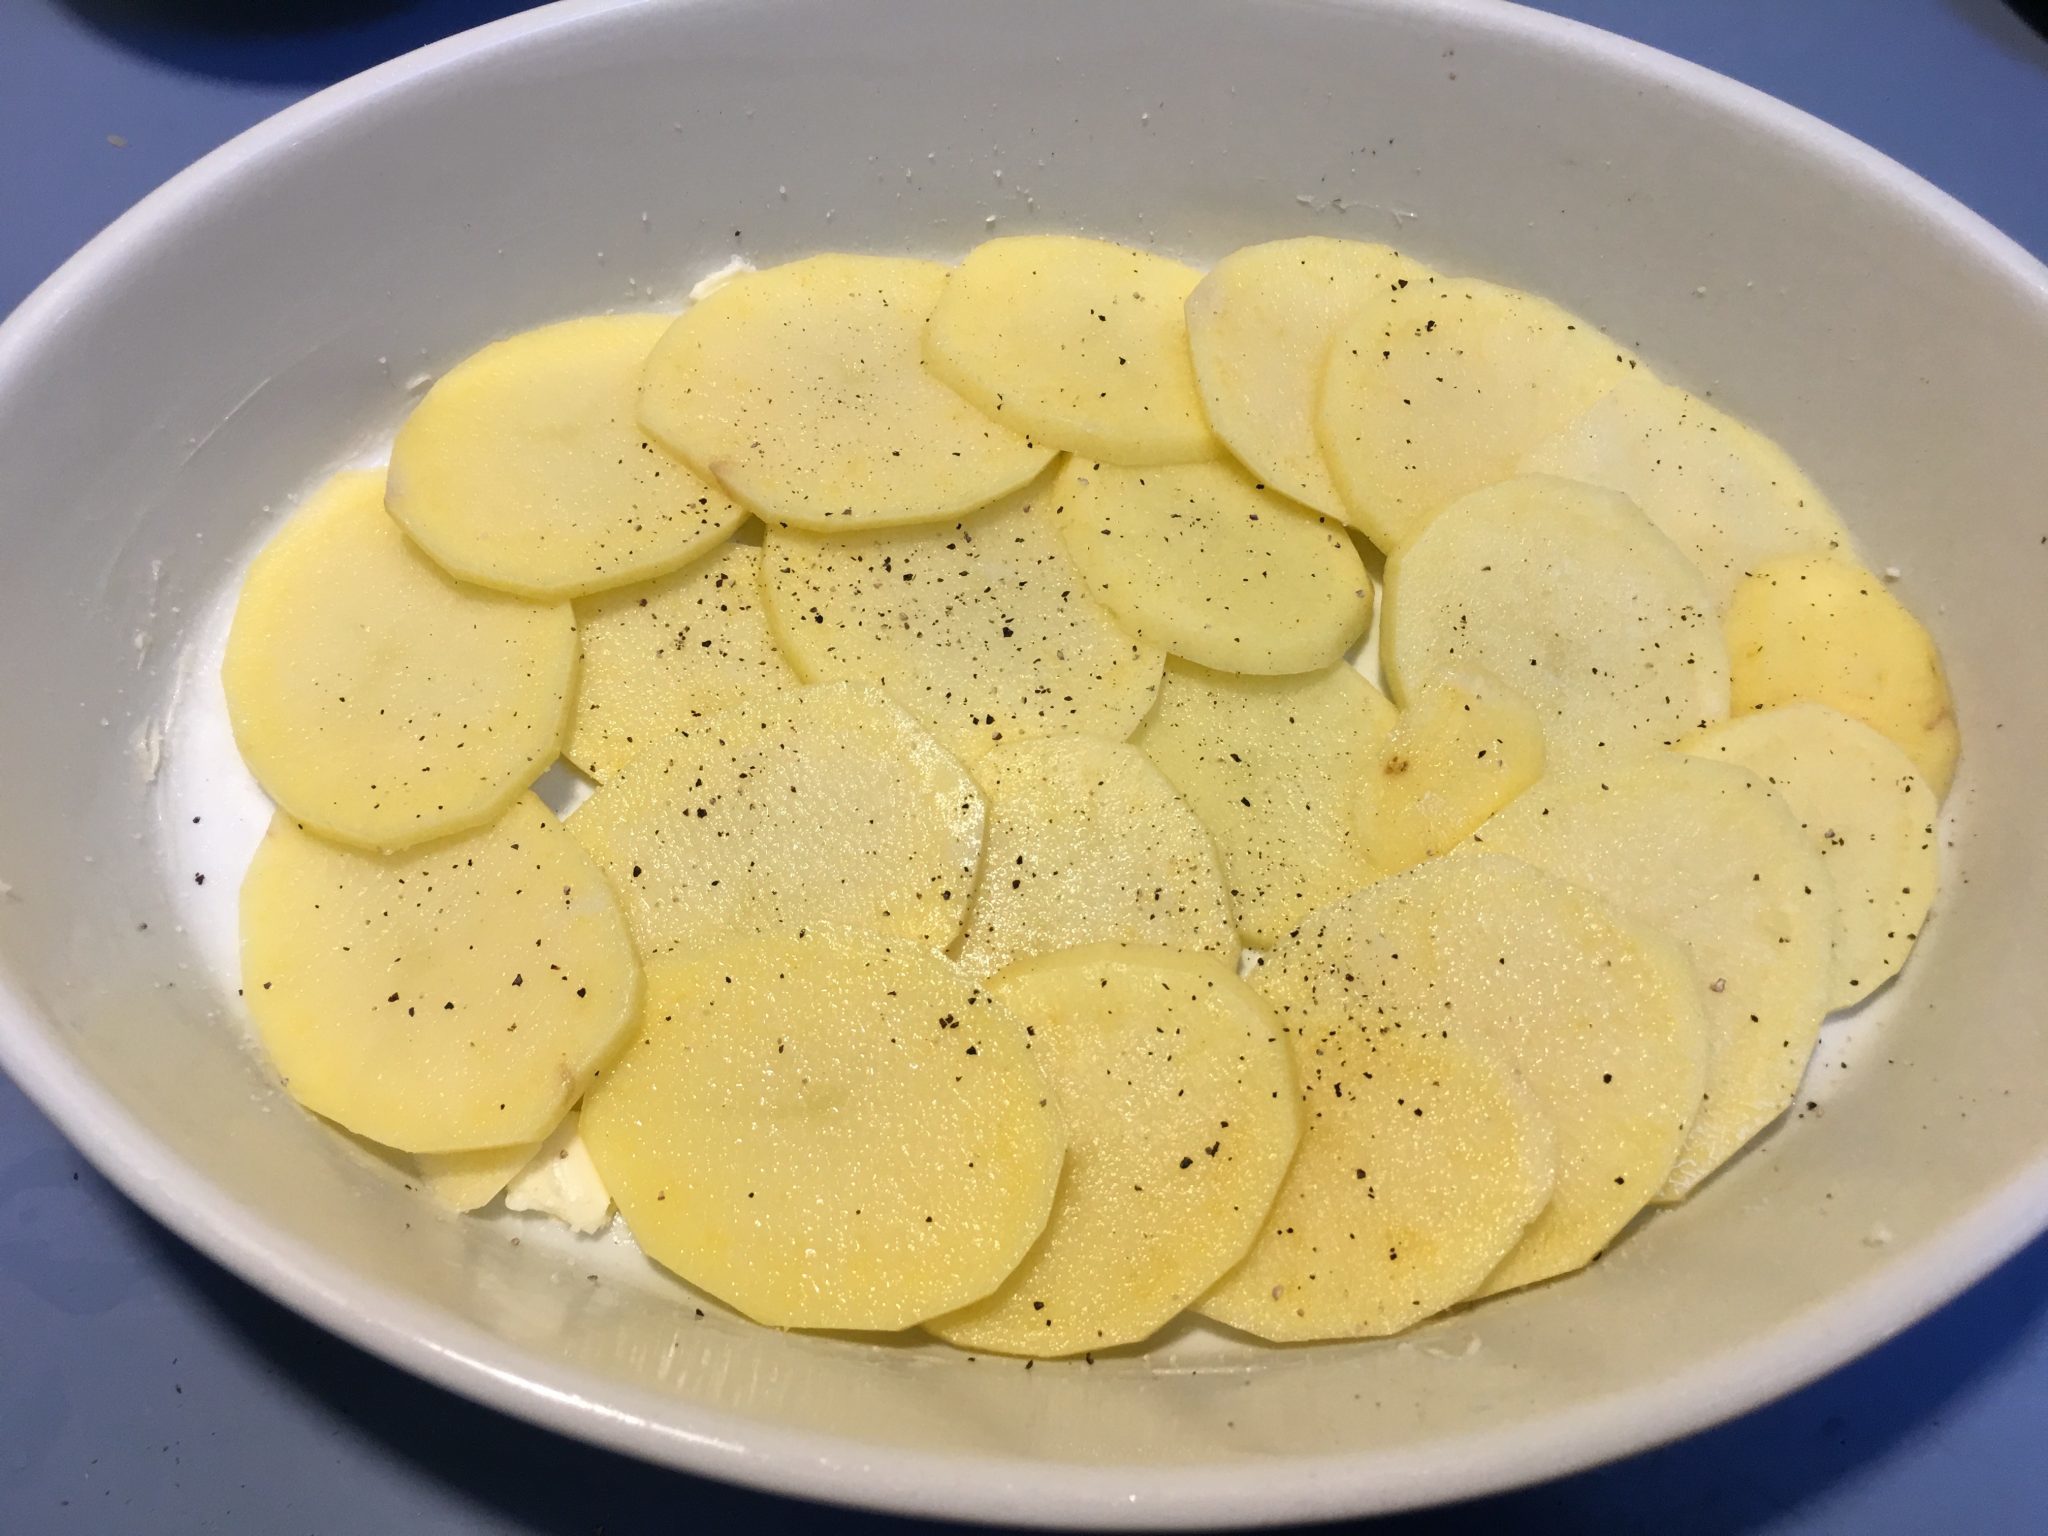 Patate affogate - strato condito con sale e pepe